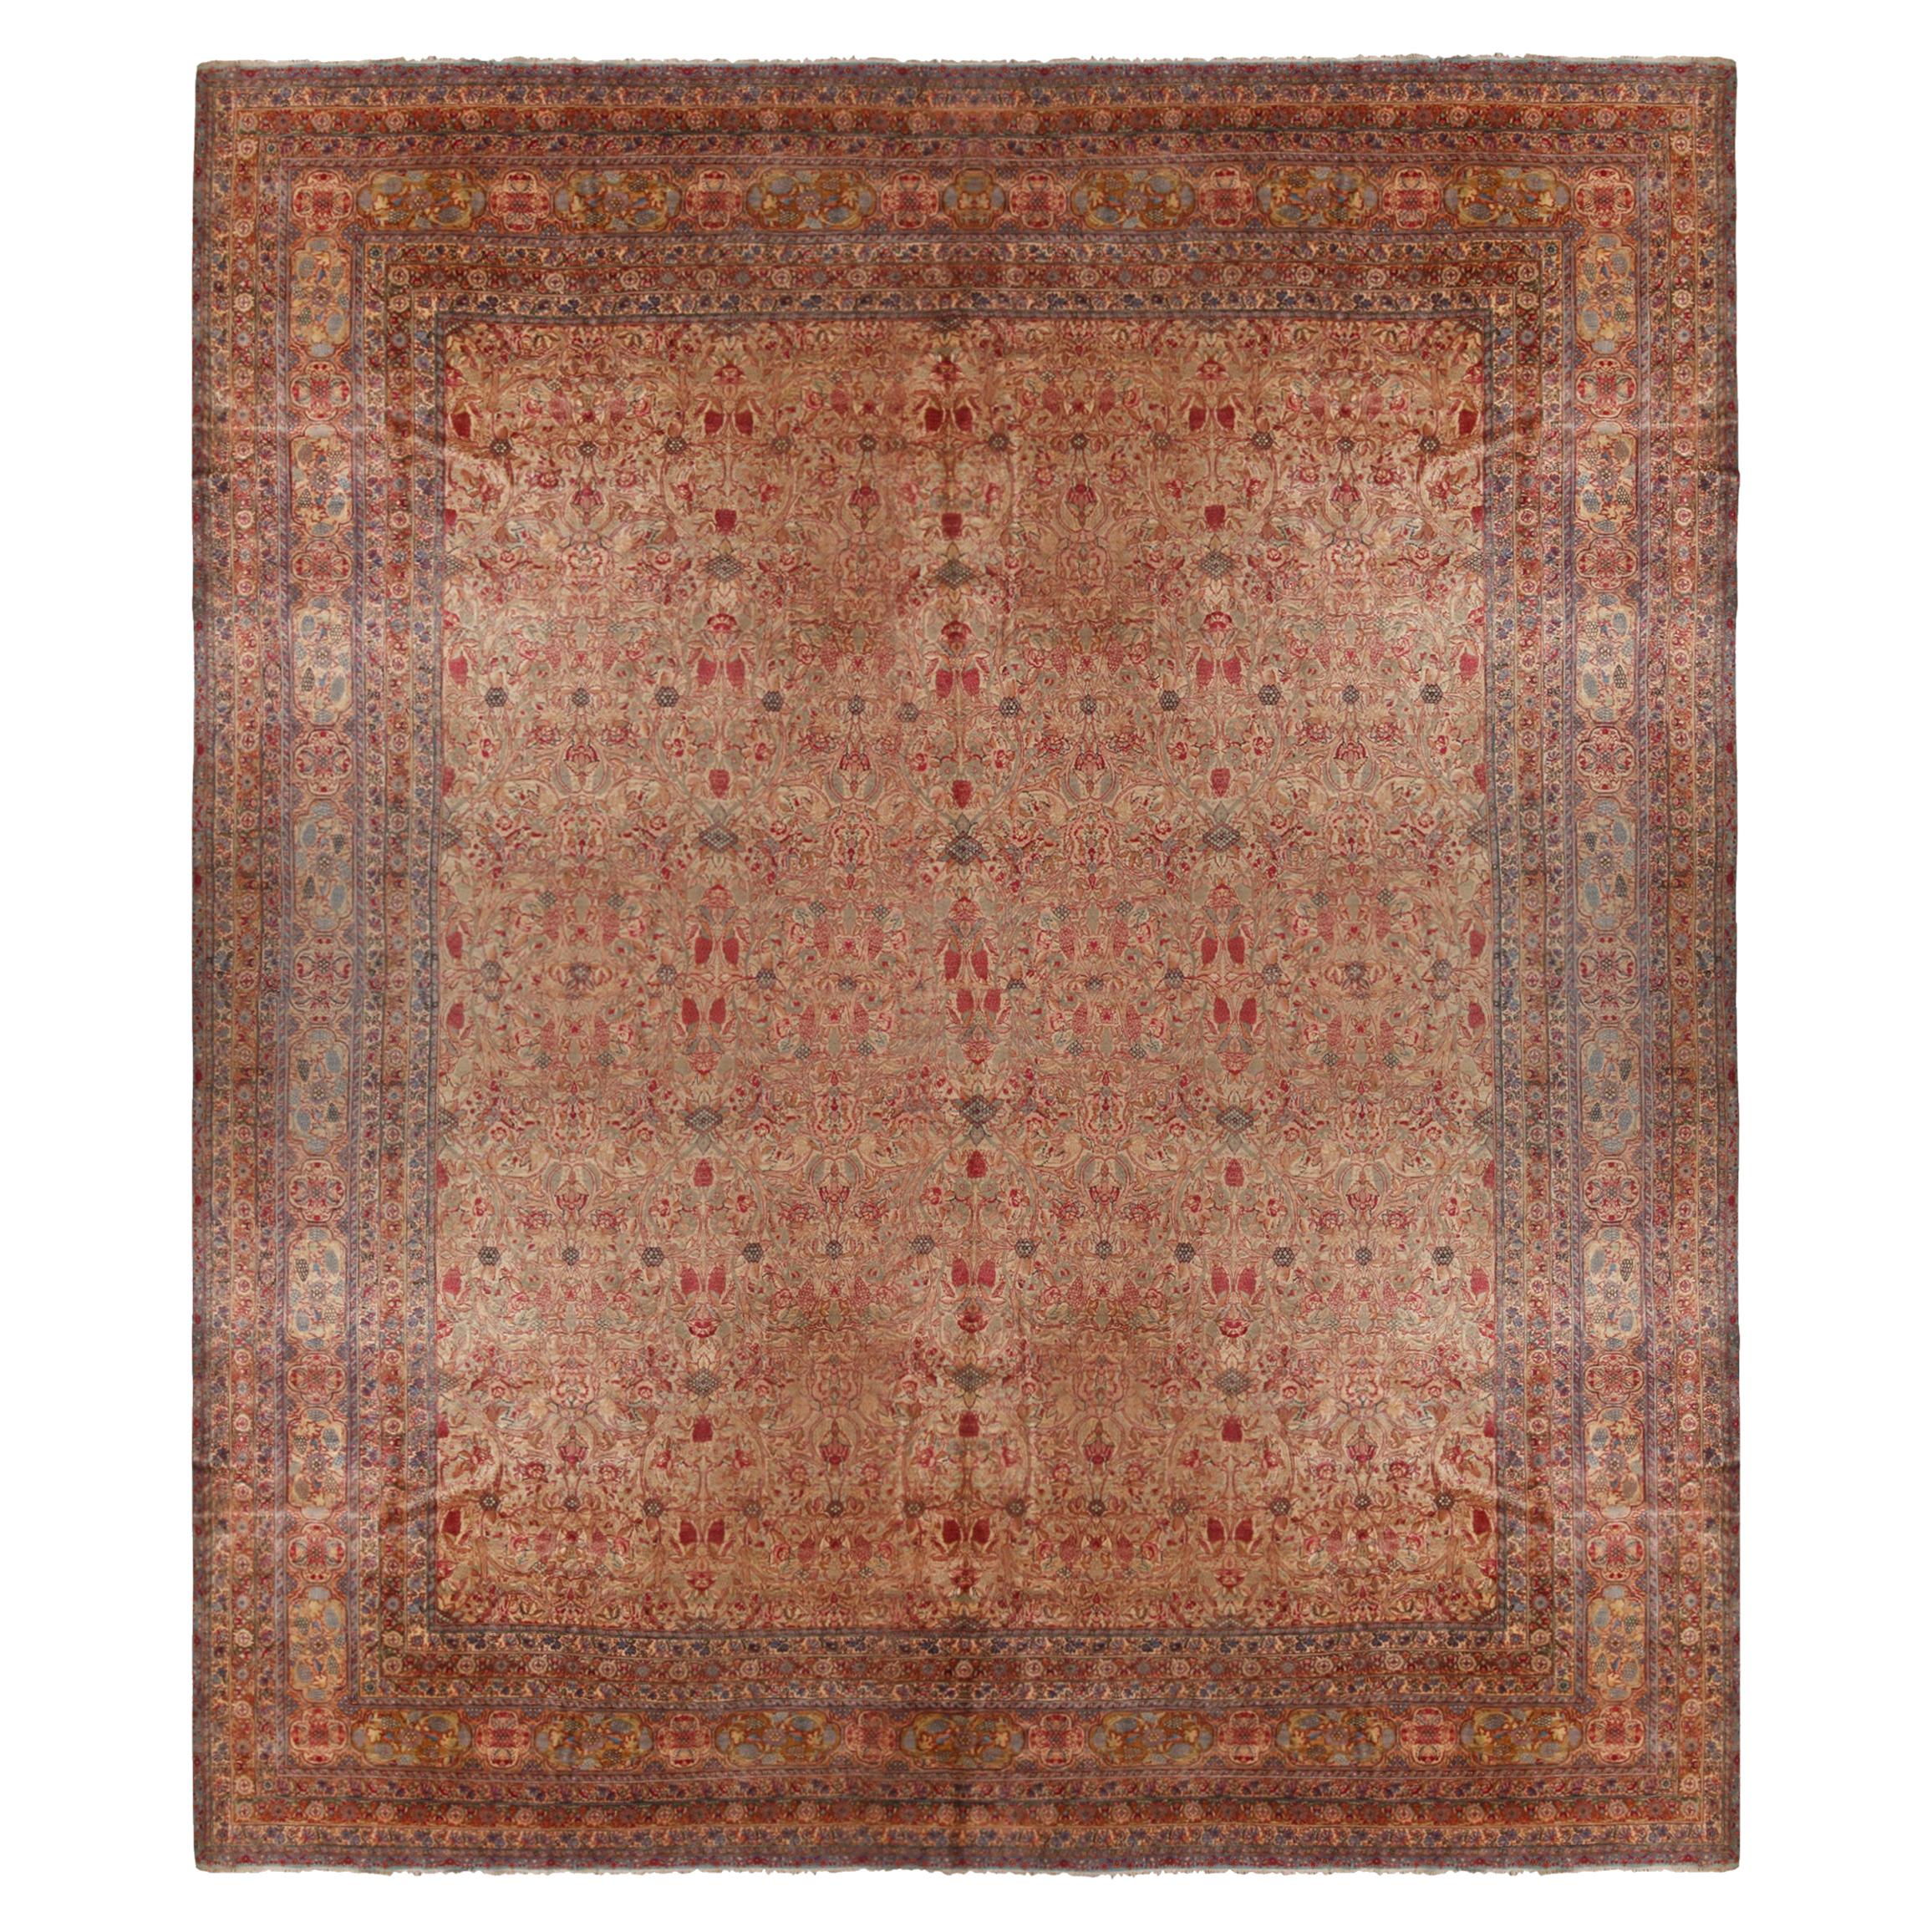 Antique Kerman Beige-Brown and Red Wool Persian Rug